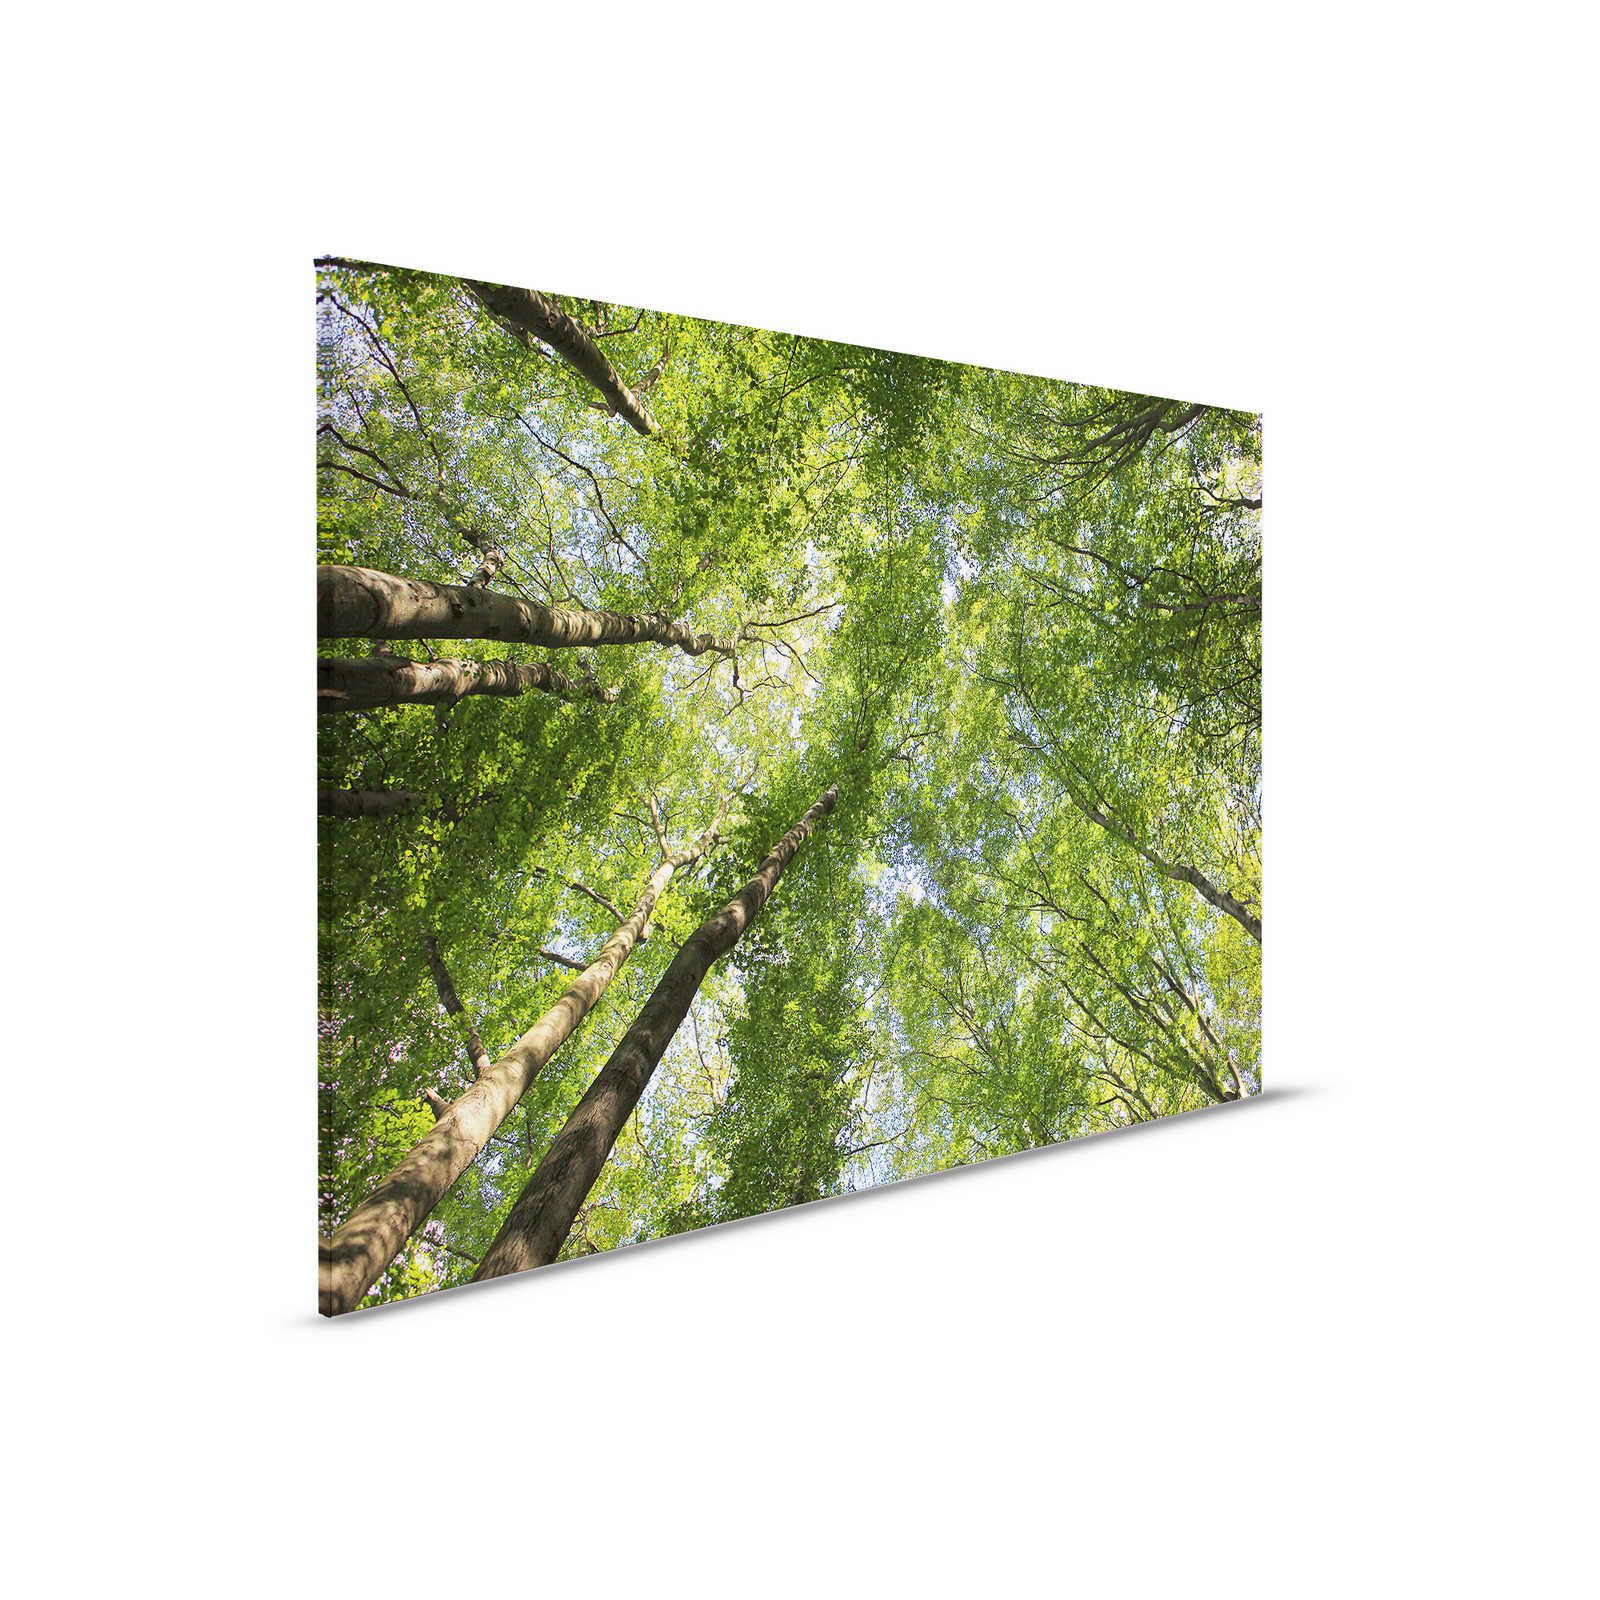 Blätterdach Leinwandbild mit Laubwald Baumwipfeln – 0,90 m x 0,60 m
